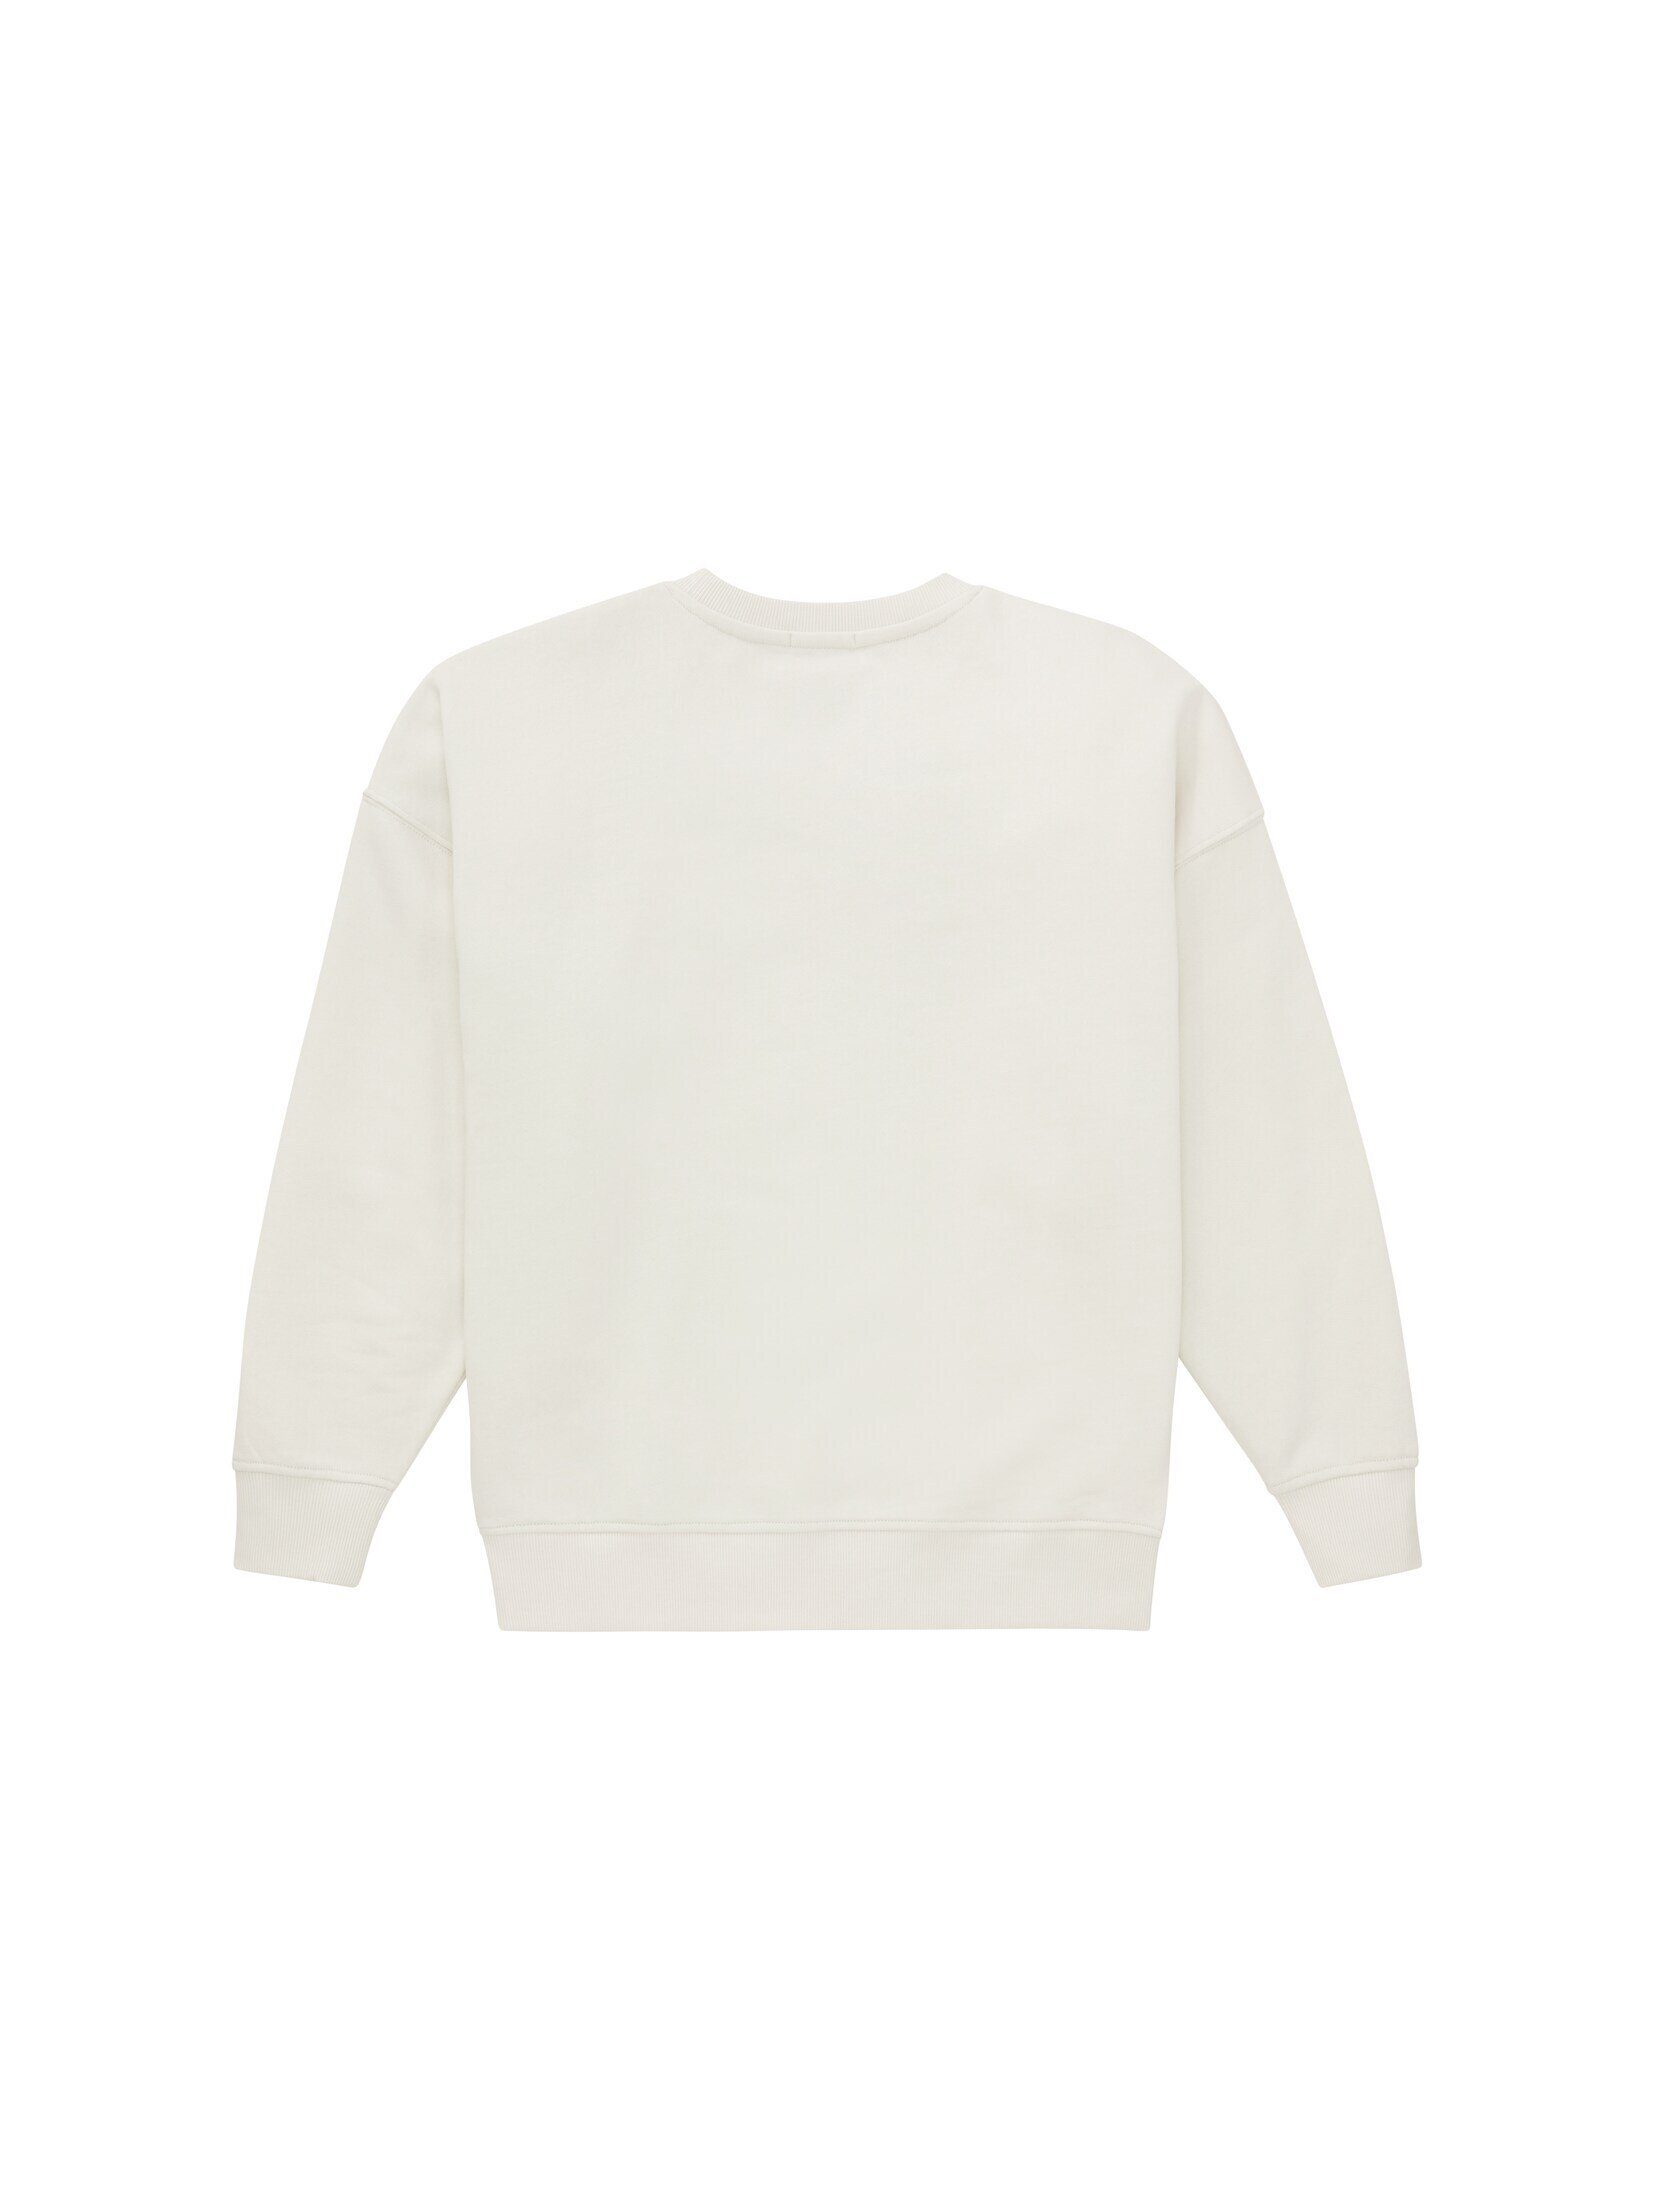 TOM Hoodie white Oversized greyish mit TAILOR Bio-Baumwolle Sweatshirt